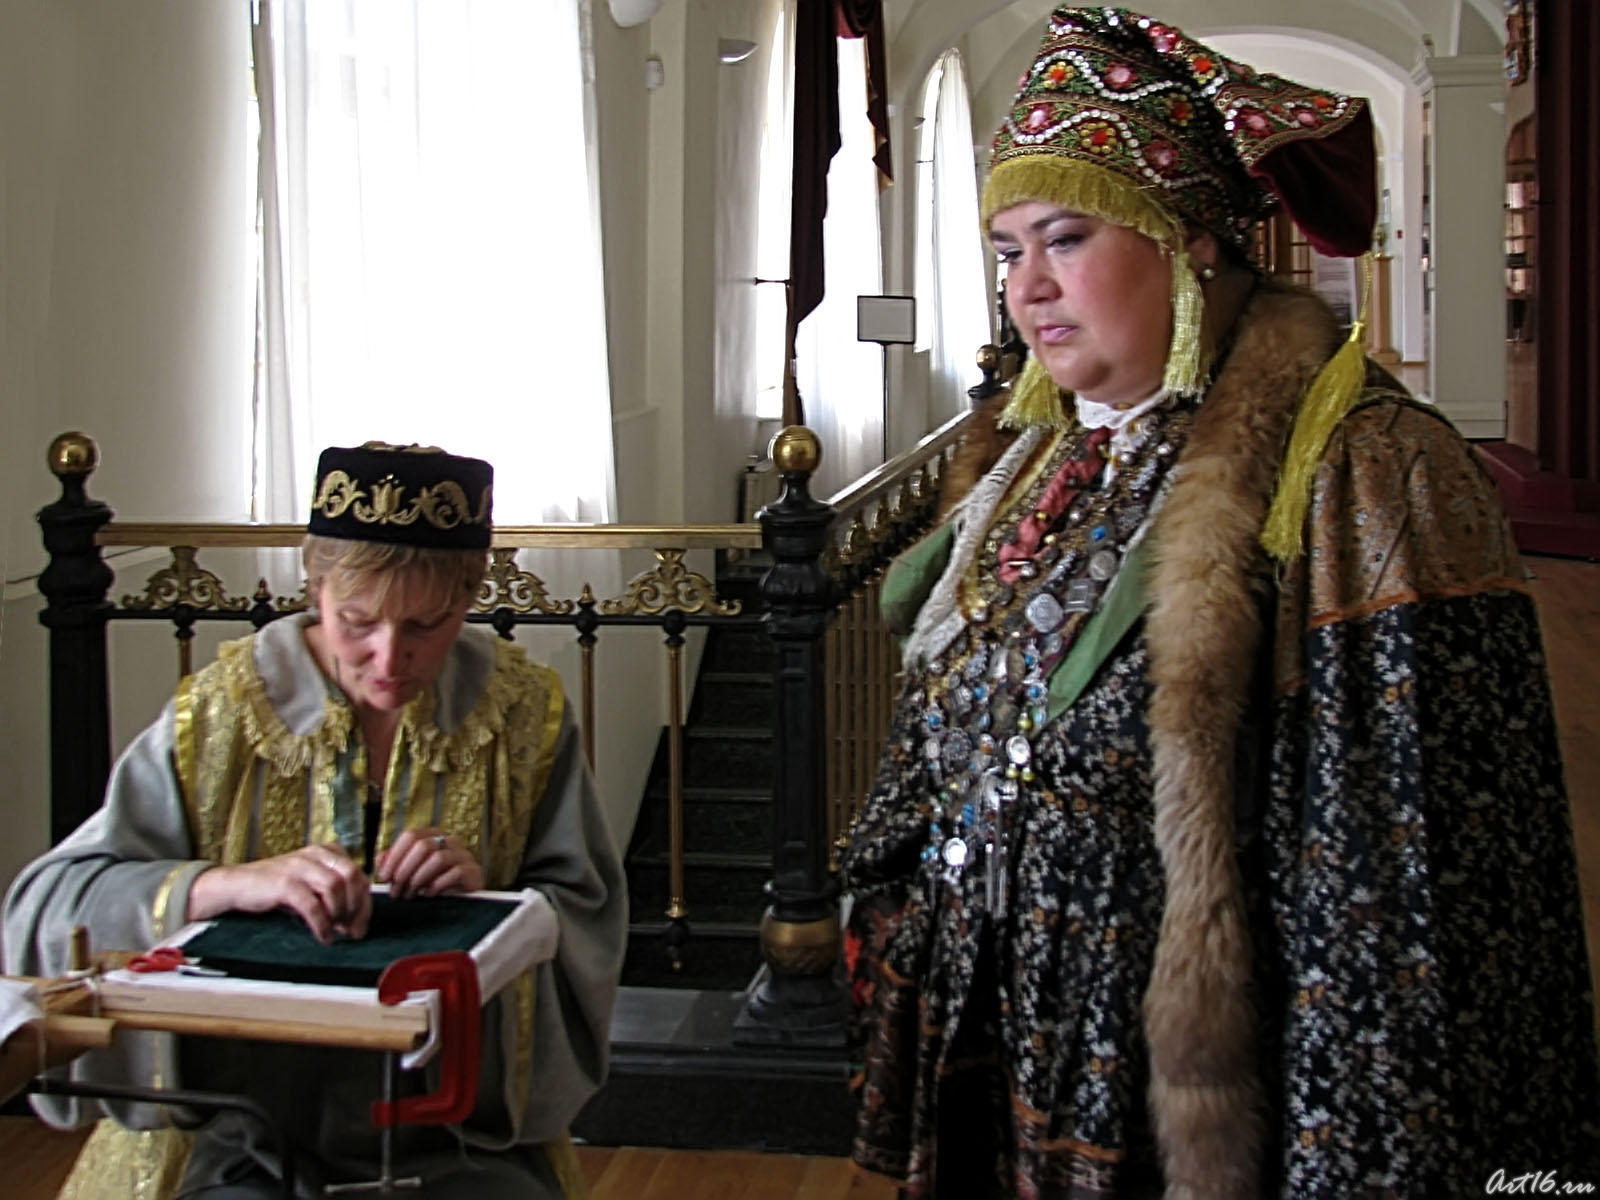 Парадный костюм татарской женщины  (нач. XIXв)::«Ожившая экспозиция»